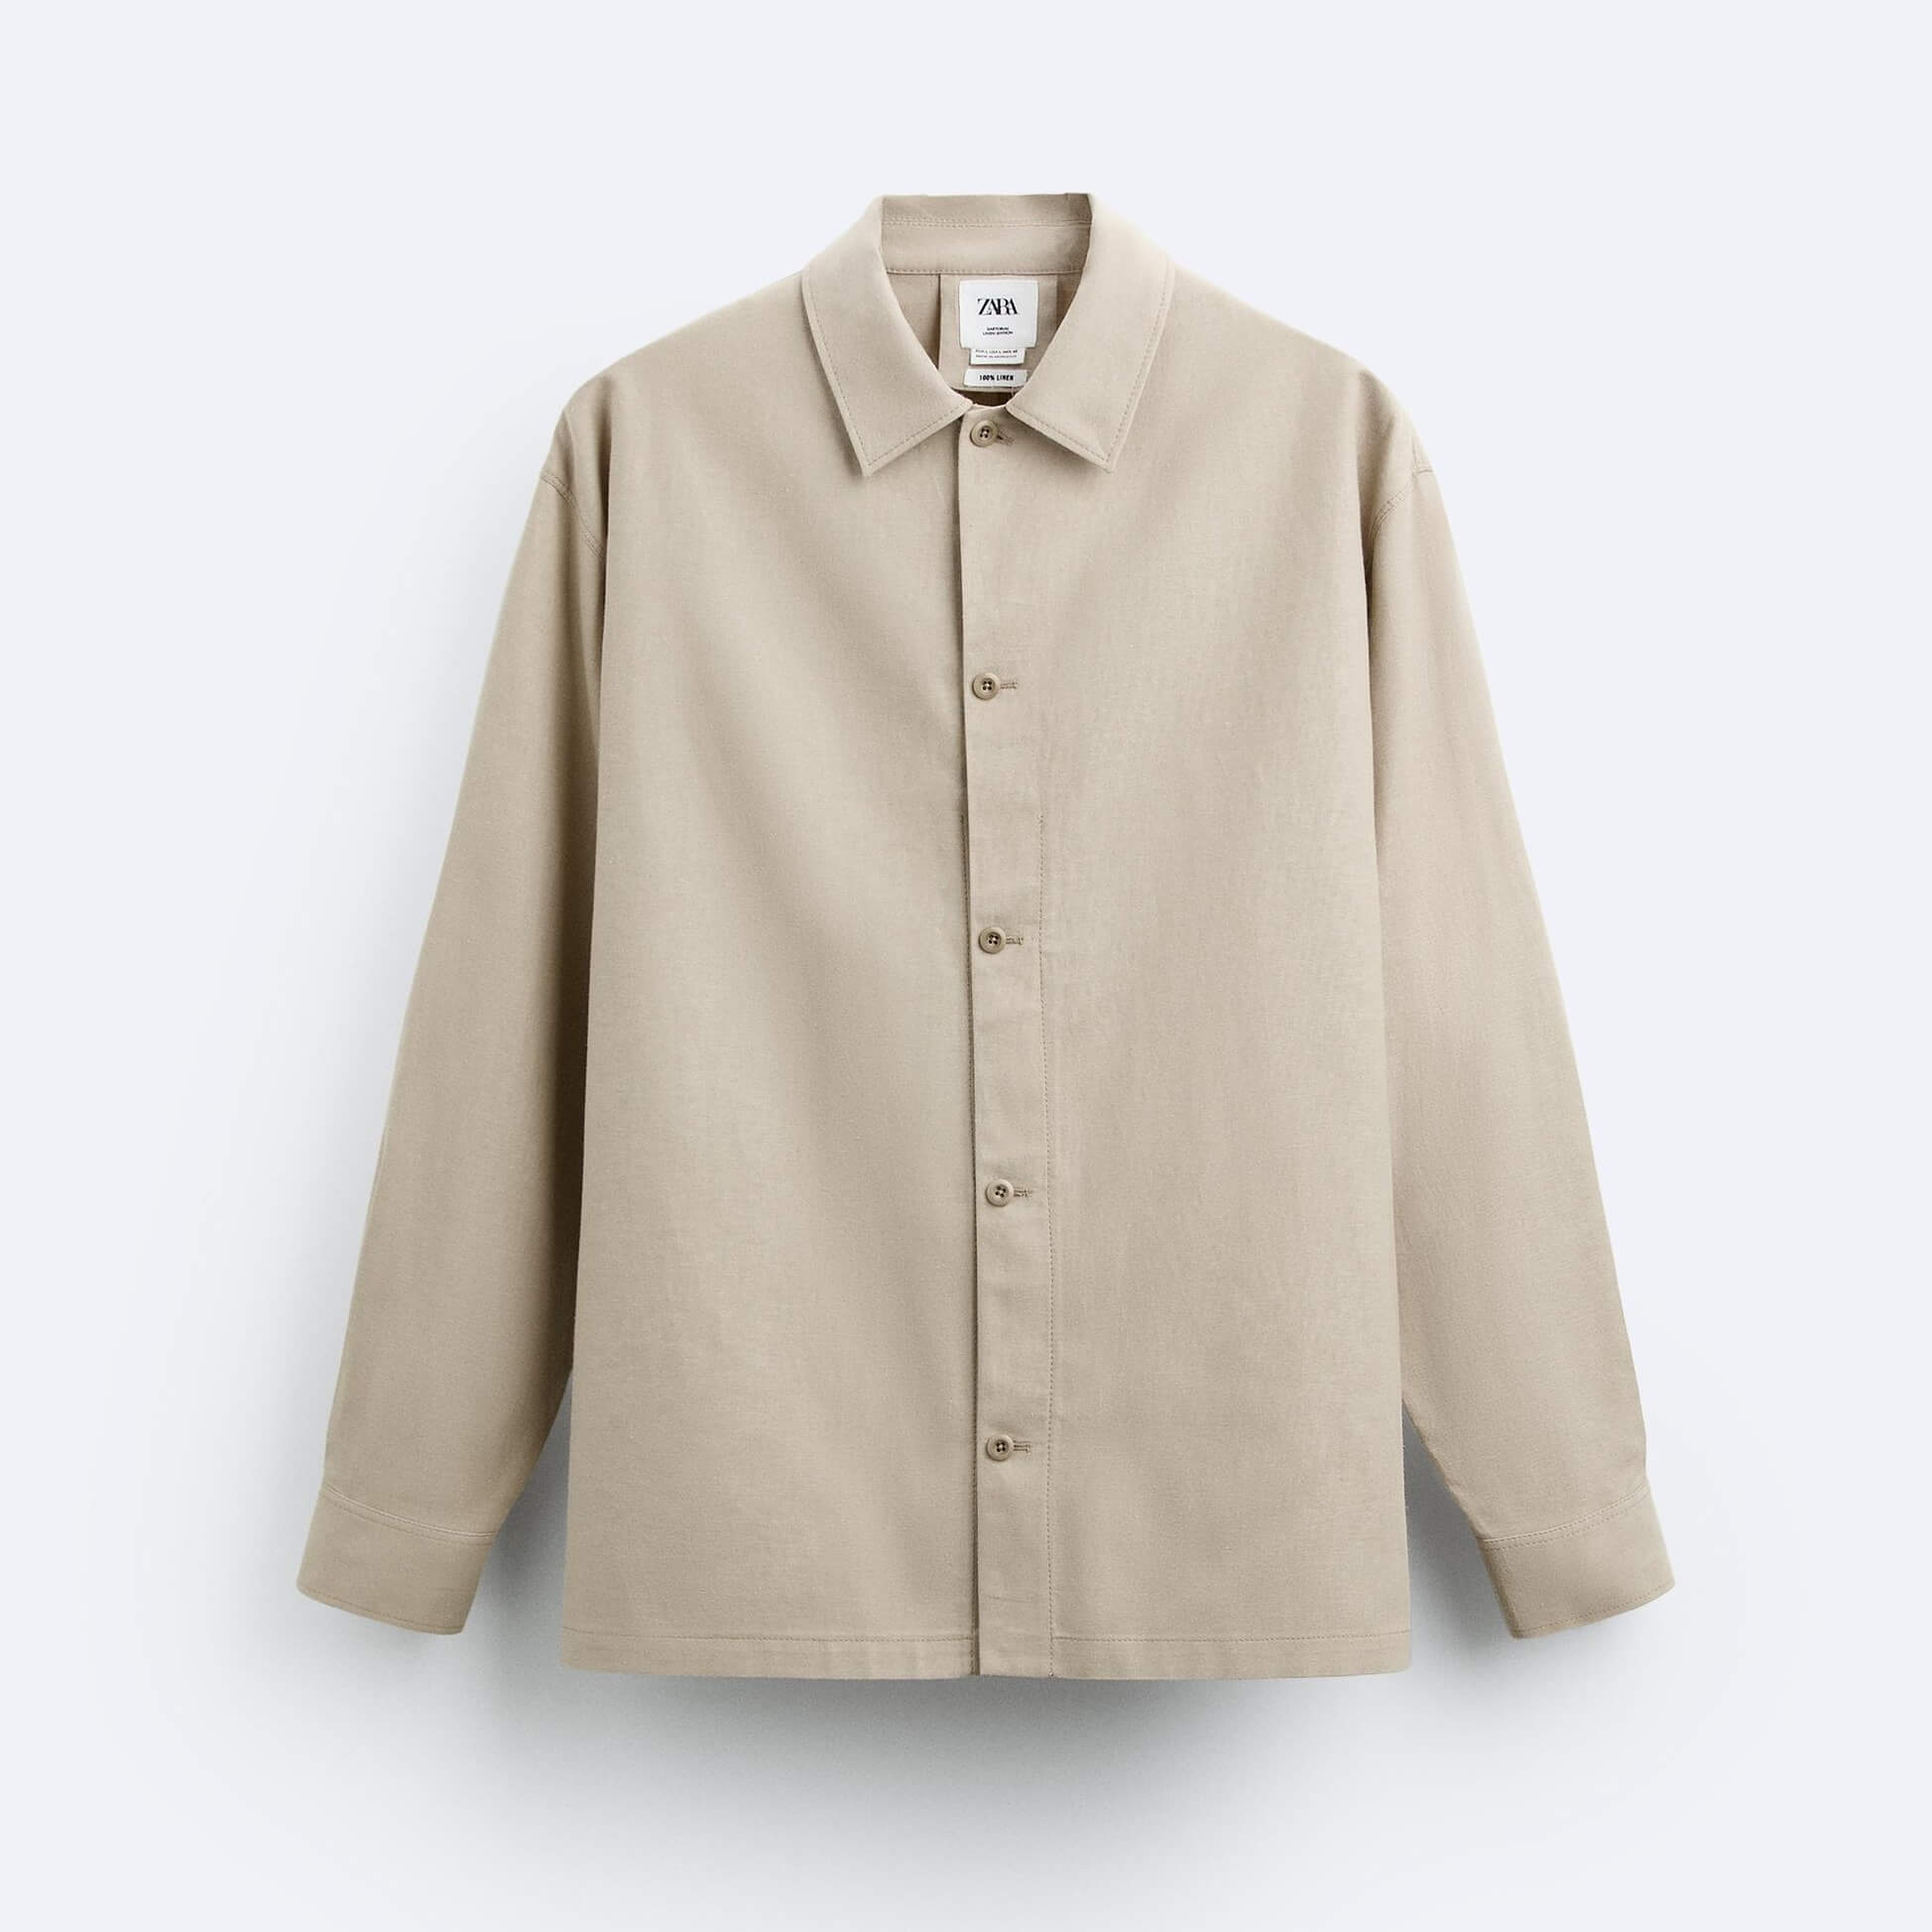 Рубашка верхняя Zara Cotton Linen, бежевый рубашка женская из хлопка и льна блузка свободного покроя в ретро стиле с рукавами фонариками средней длины лето